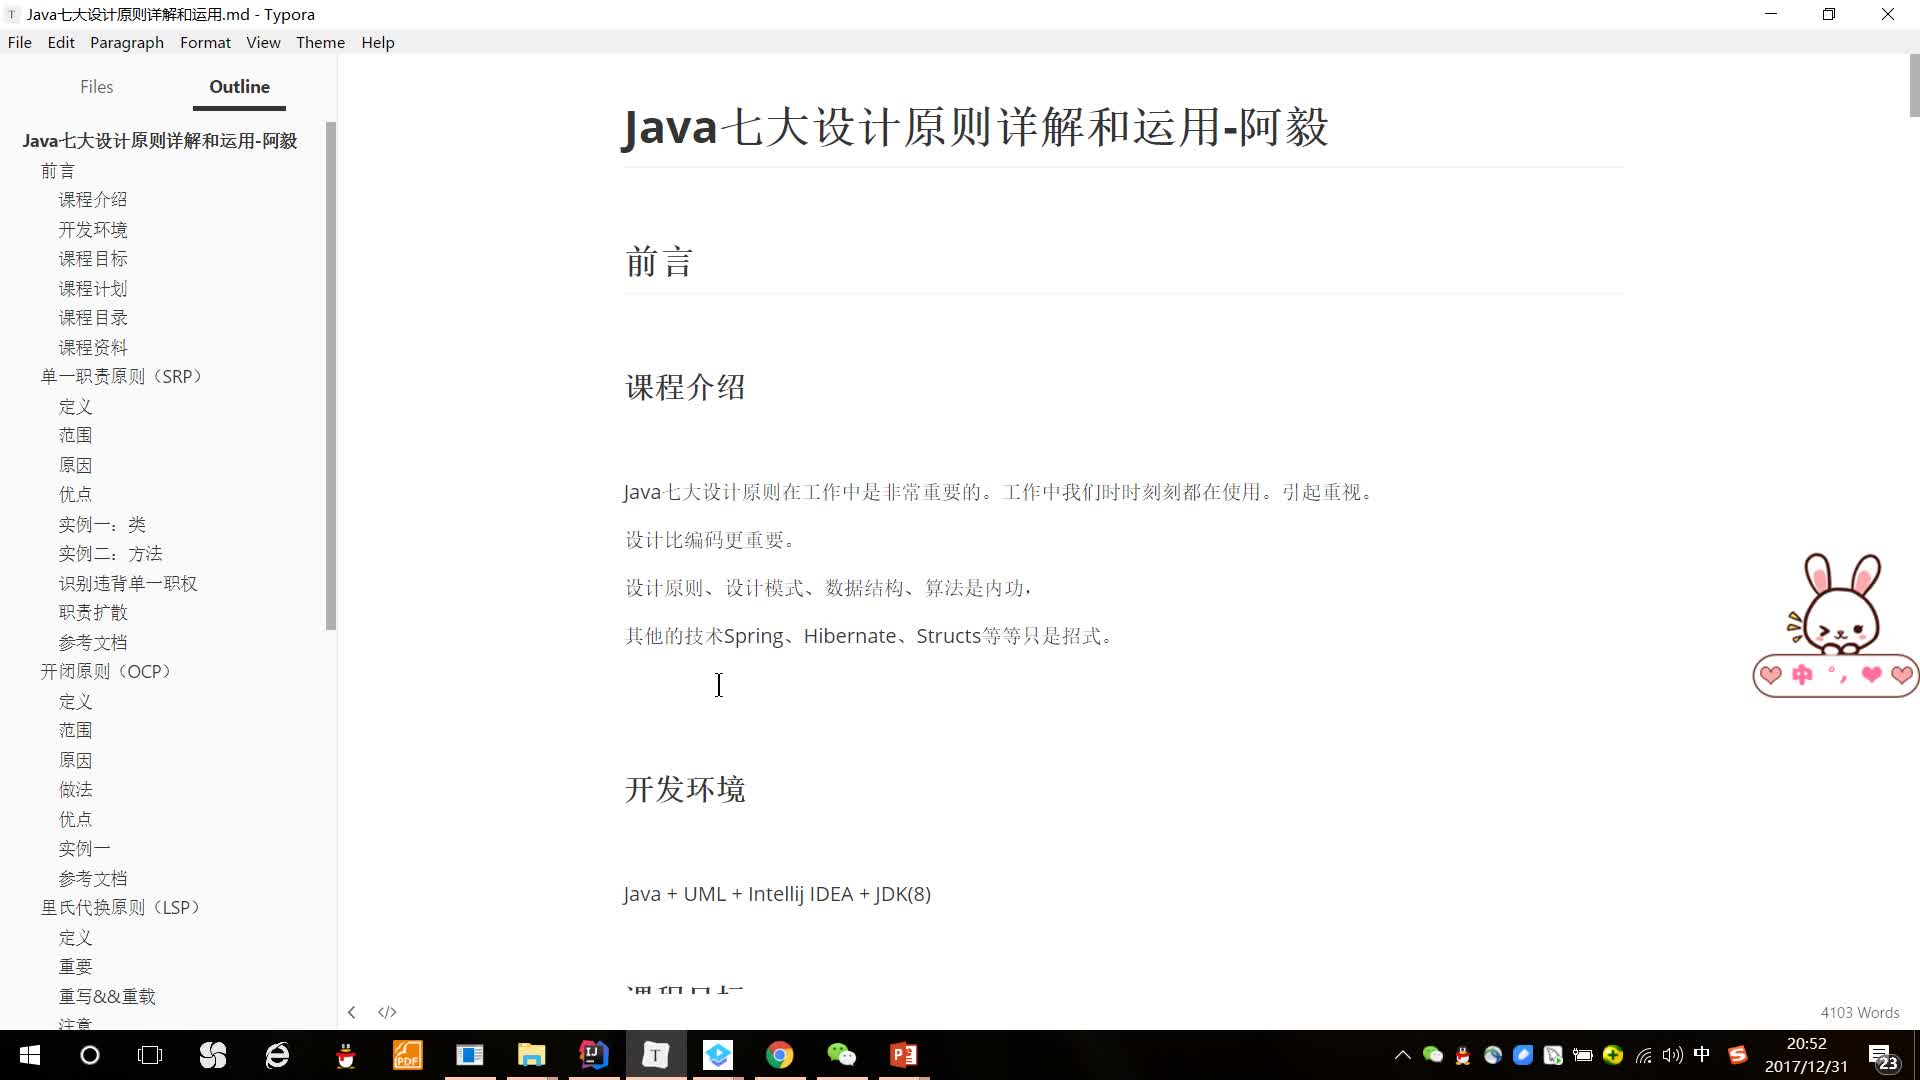 Java七大设计原则详解及运用